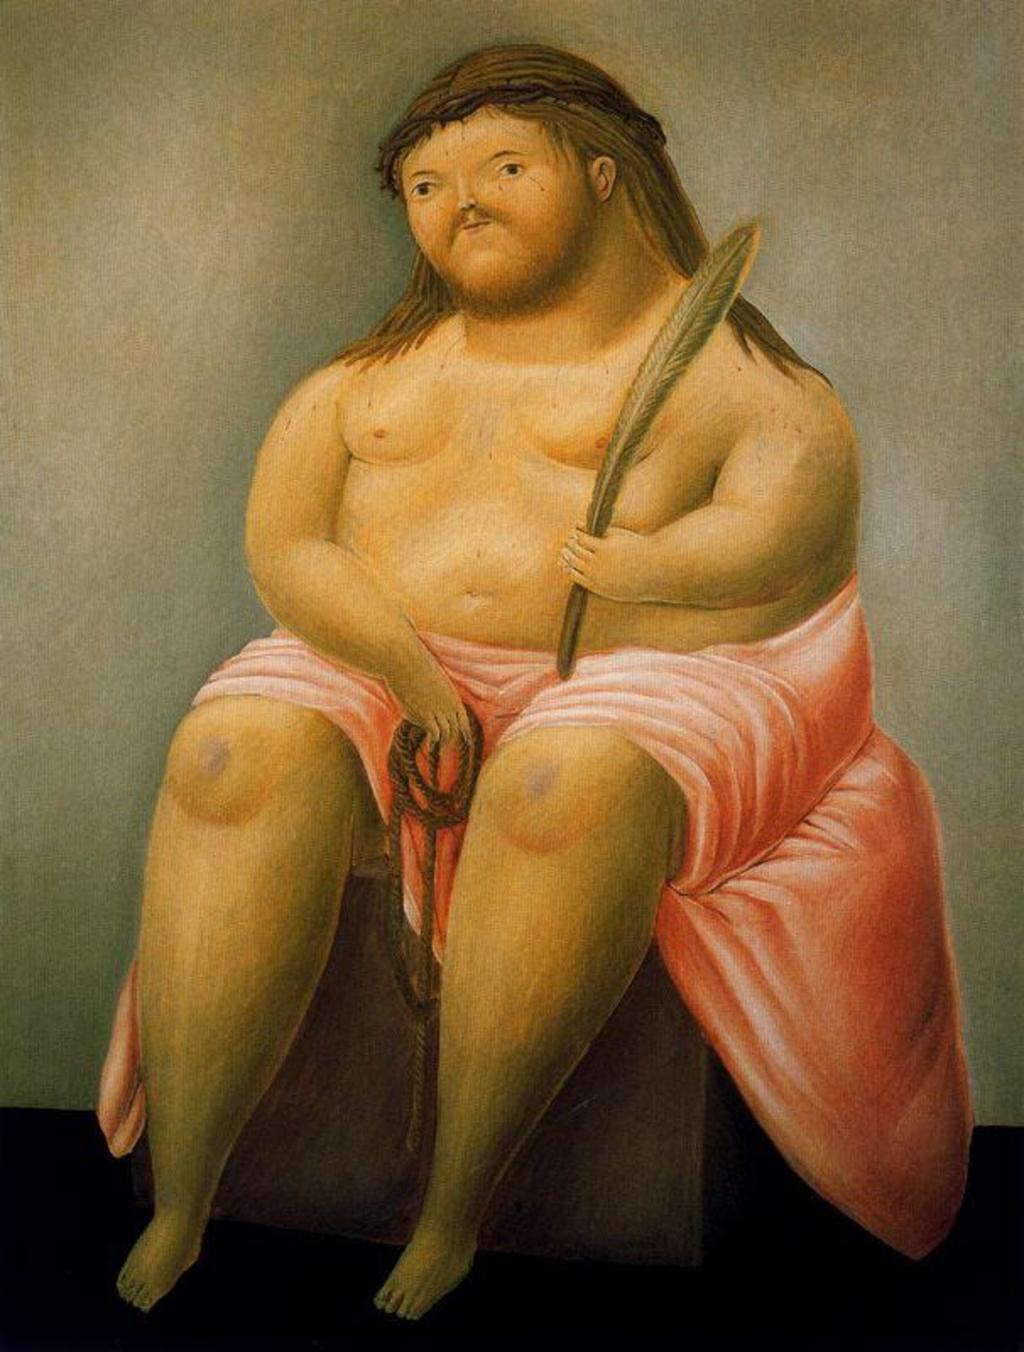 Ecce Homo muestra los dos tipos de figuras creados por Botero, pintado con capas delgadas y trazos muy particulares, combinando elementos incongruentes y expresando ese gran sentido del humor del artista. (ESPECIAL)